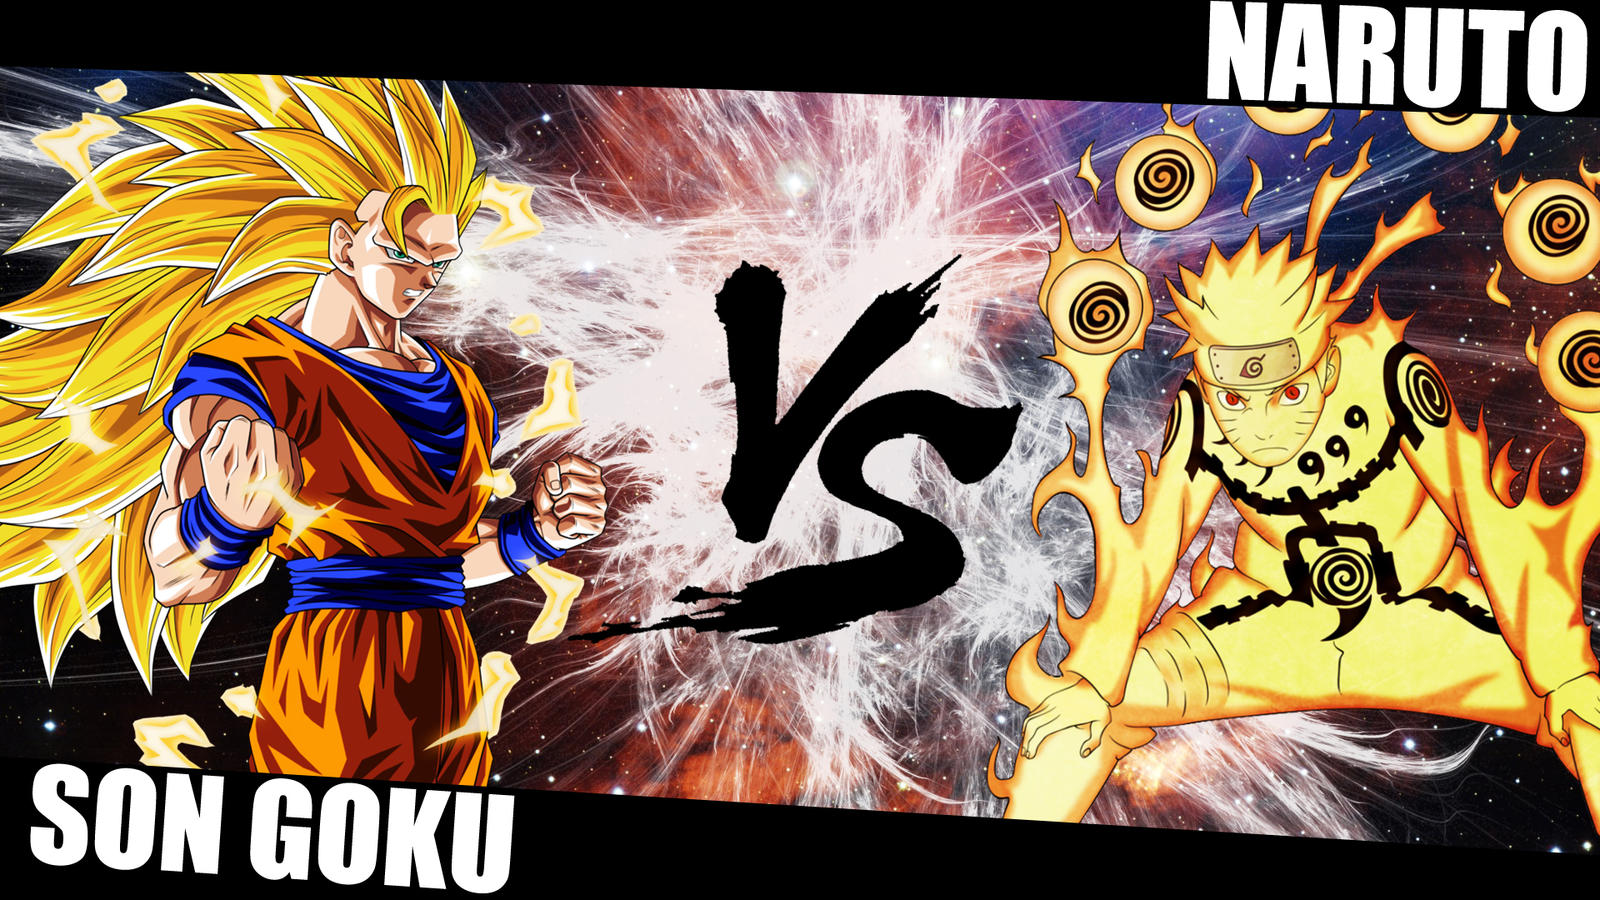 Wallpaper Anime Naruto And Goku Goku And Naruto Wallpapers